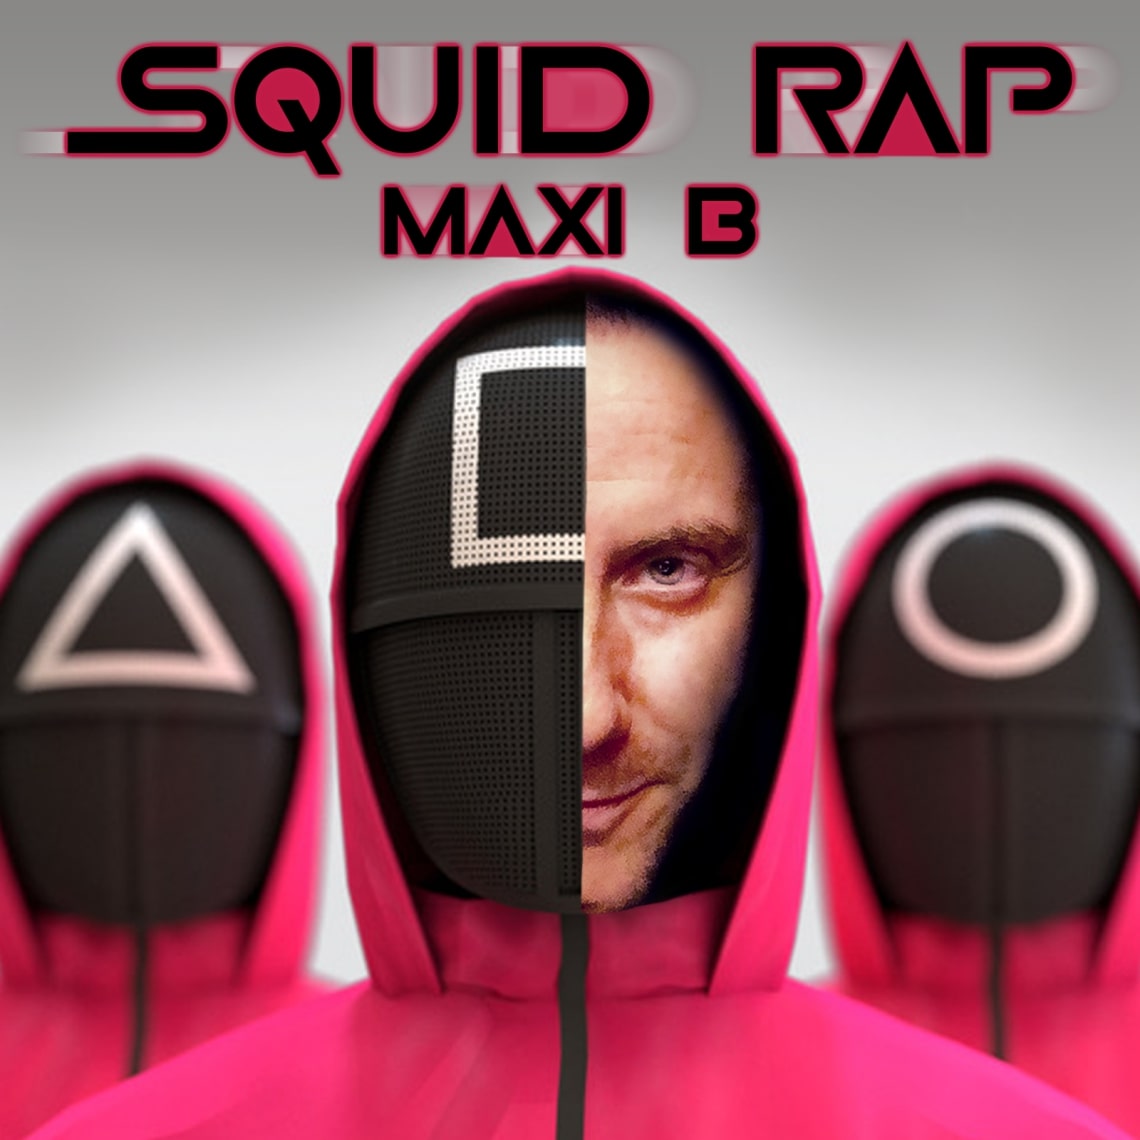 Squid rap